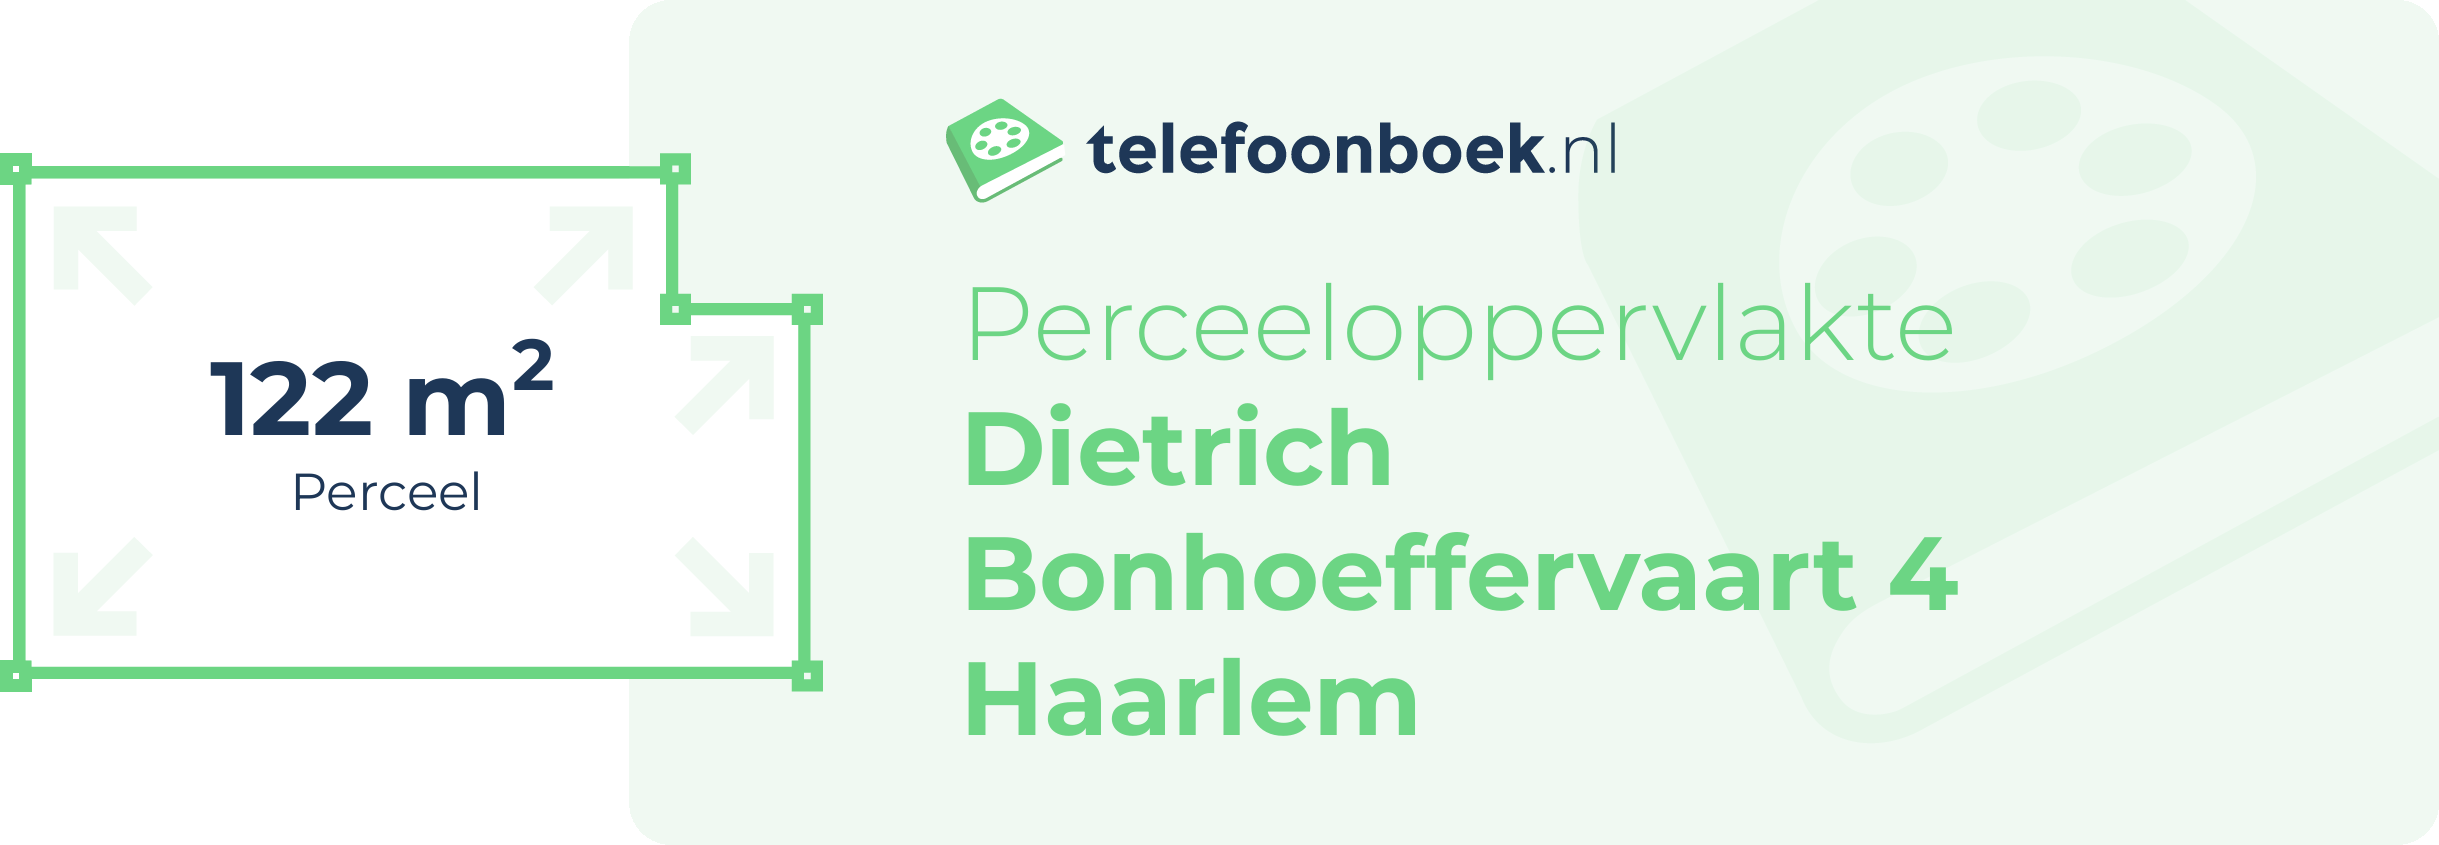 Perceeloppervlakte Dietrich Bonhoeffervaart 4 Haarlem